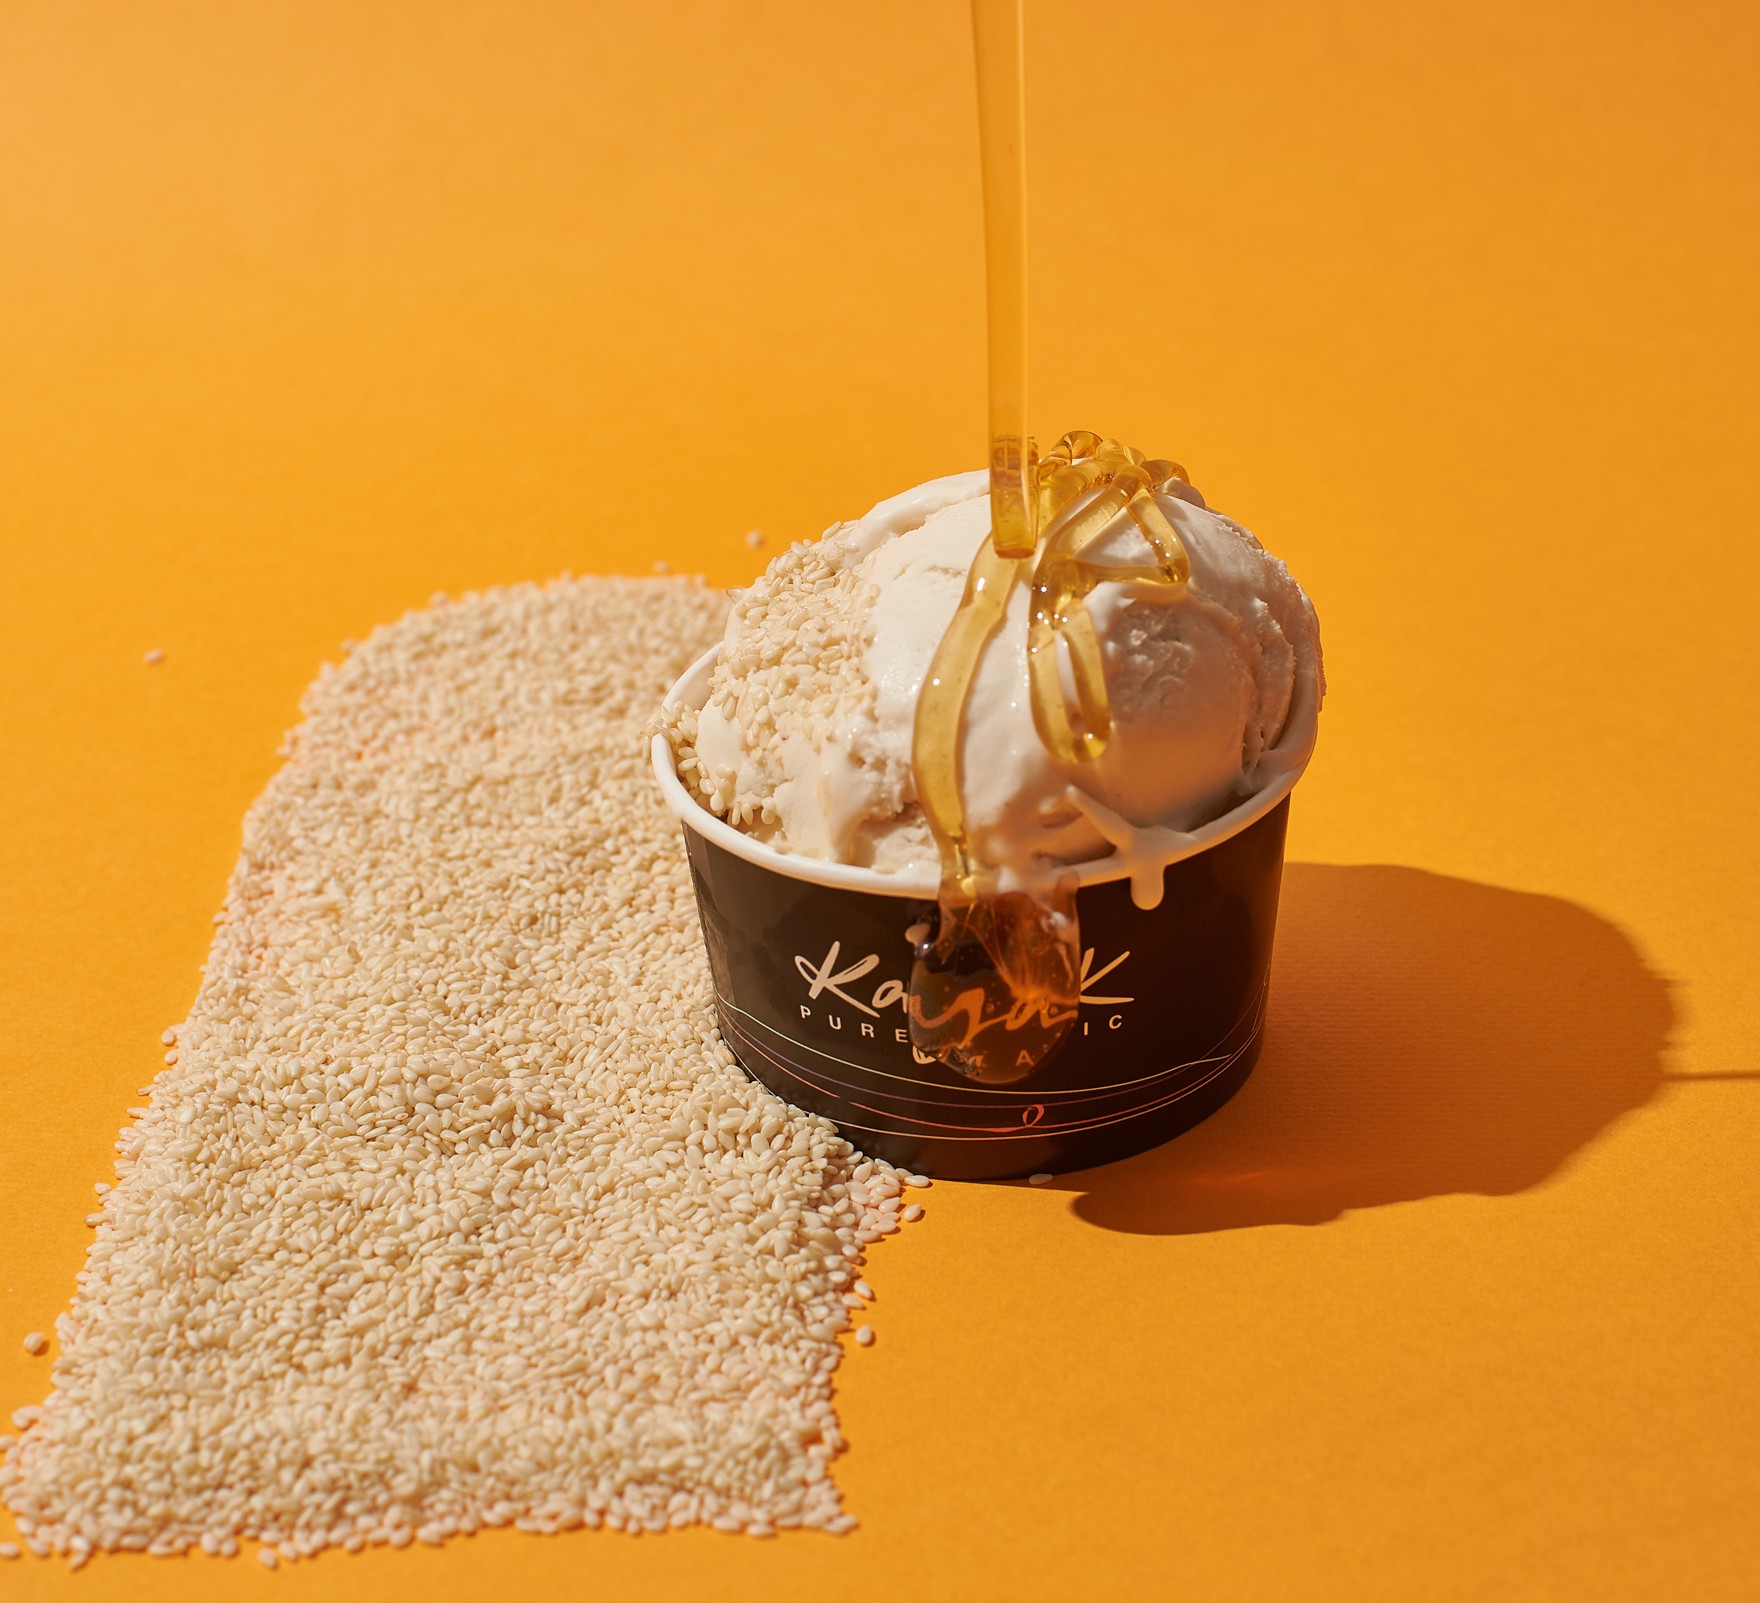 Παγωτό παρμεζάνα; Παγωτό με λευκή τρούφα ή παγωτό σαμπάνια τριαντάφυλλο; Θα τα βρεις όλα στα Kayak